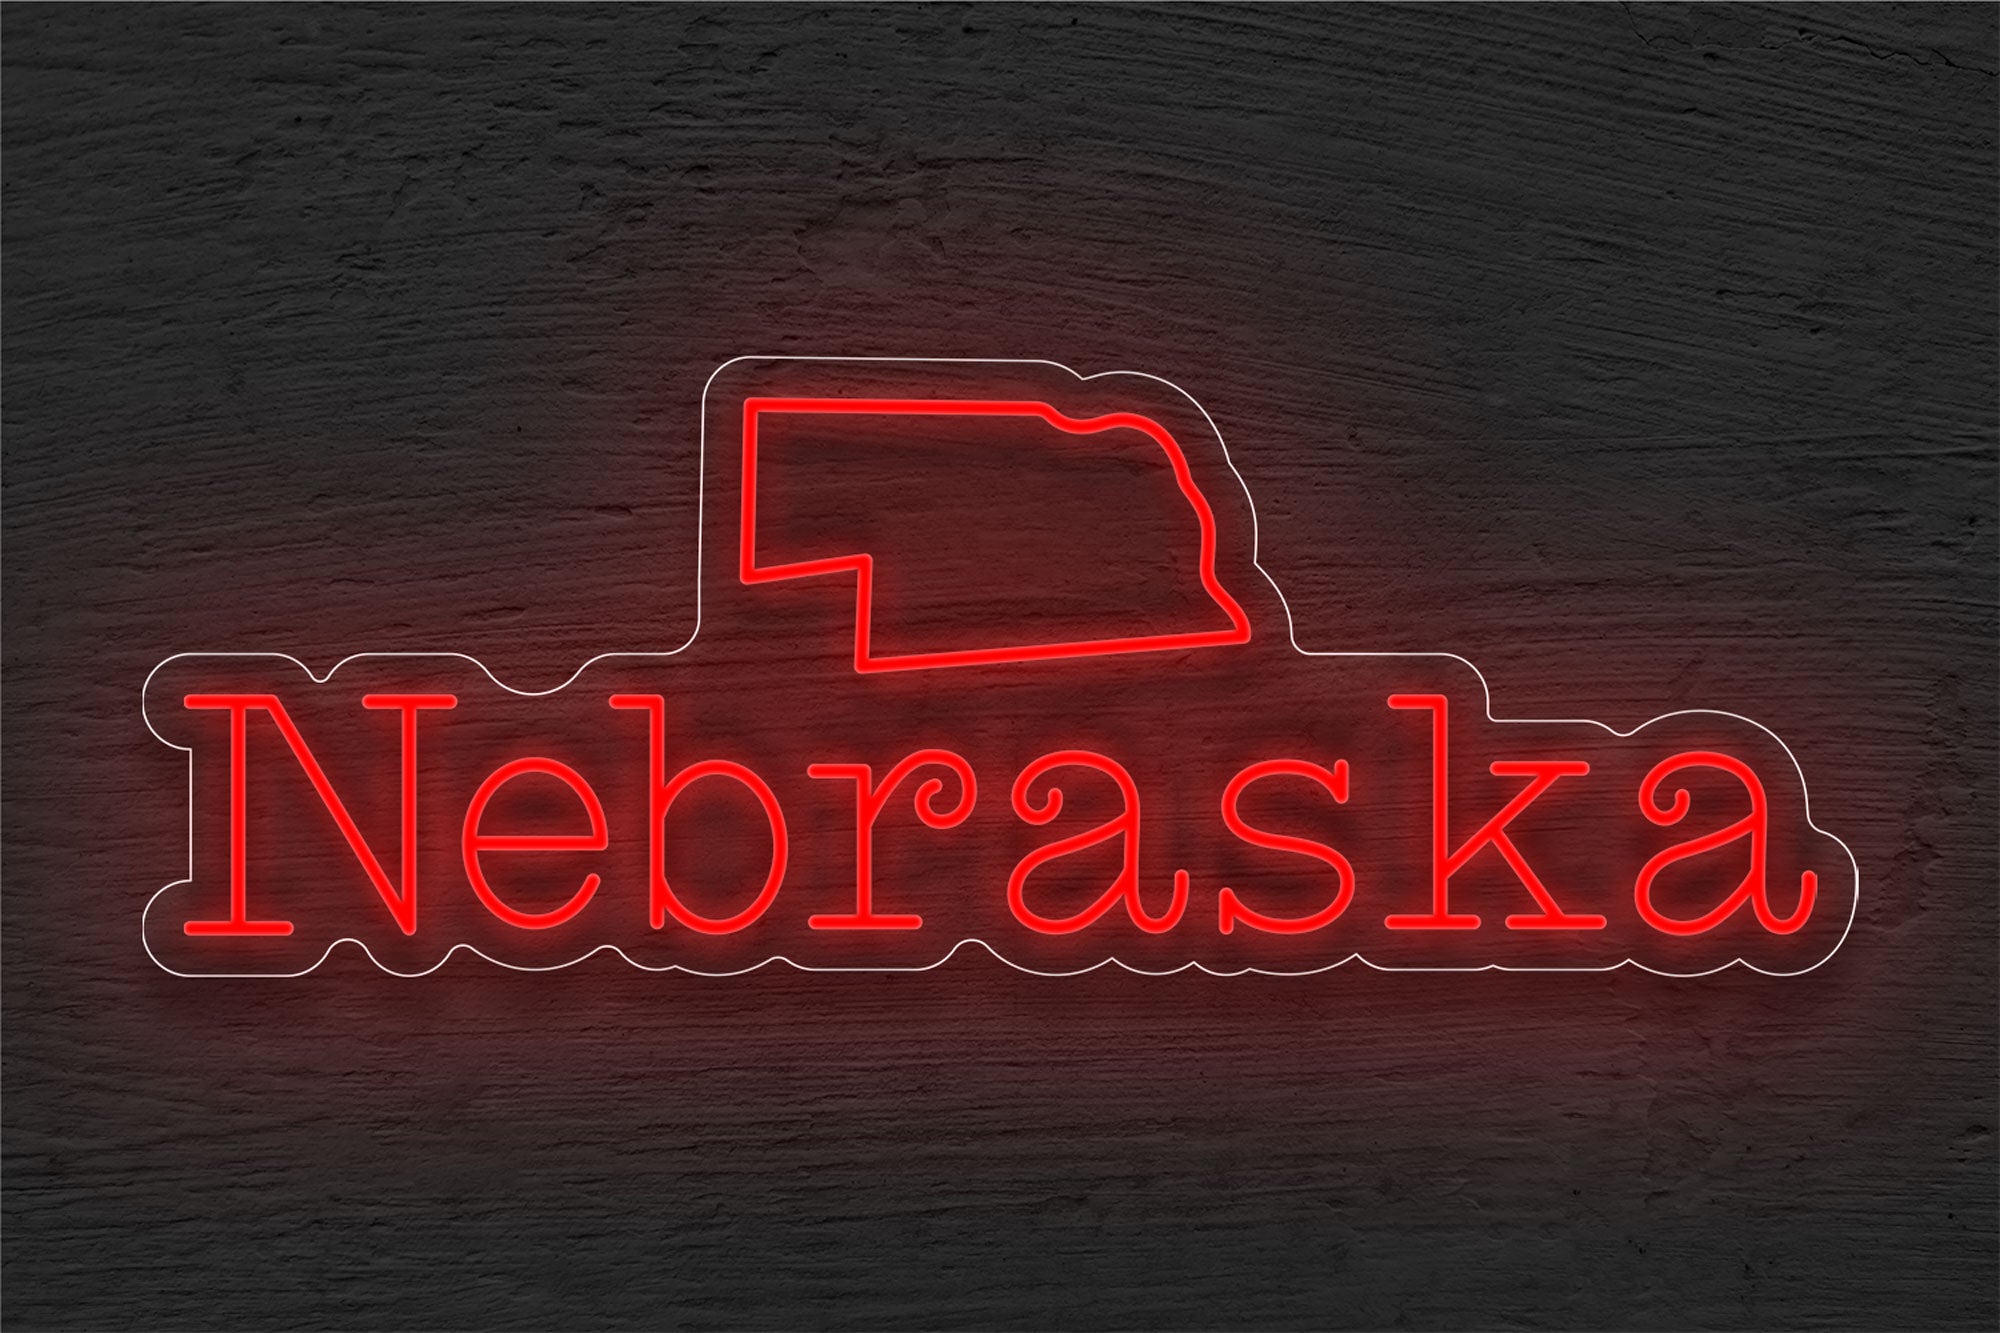 Map "Nebraska" LED Neon Sign